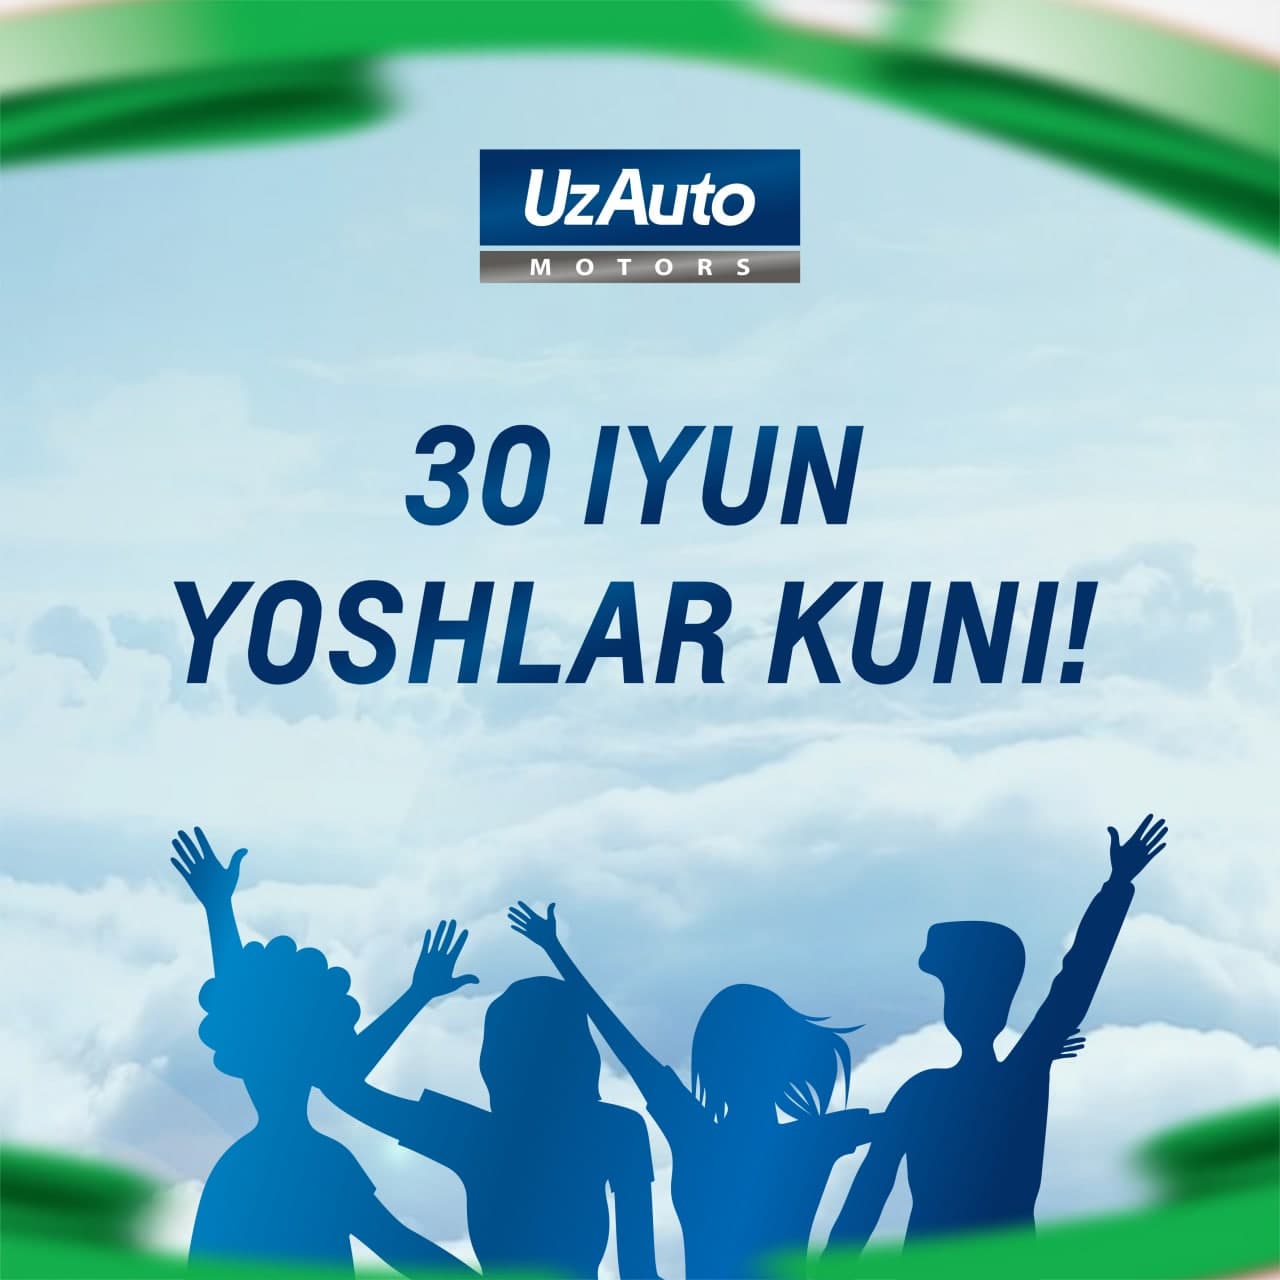 30 июня — День молодежи Узбекистана! АО  "UzAuto Motors" поздравляет Вас с праздником!